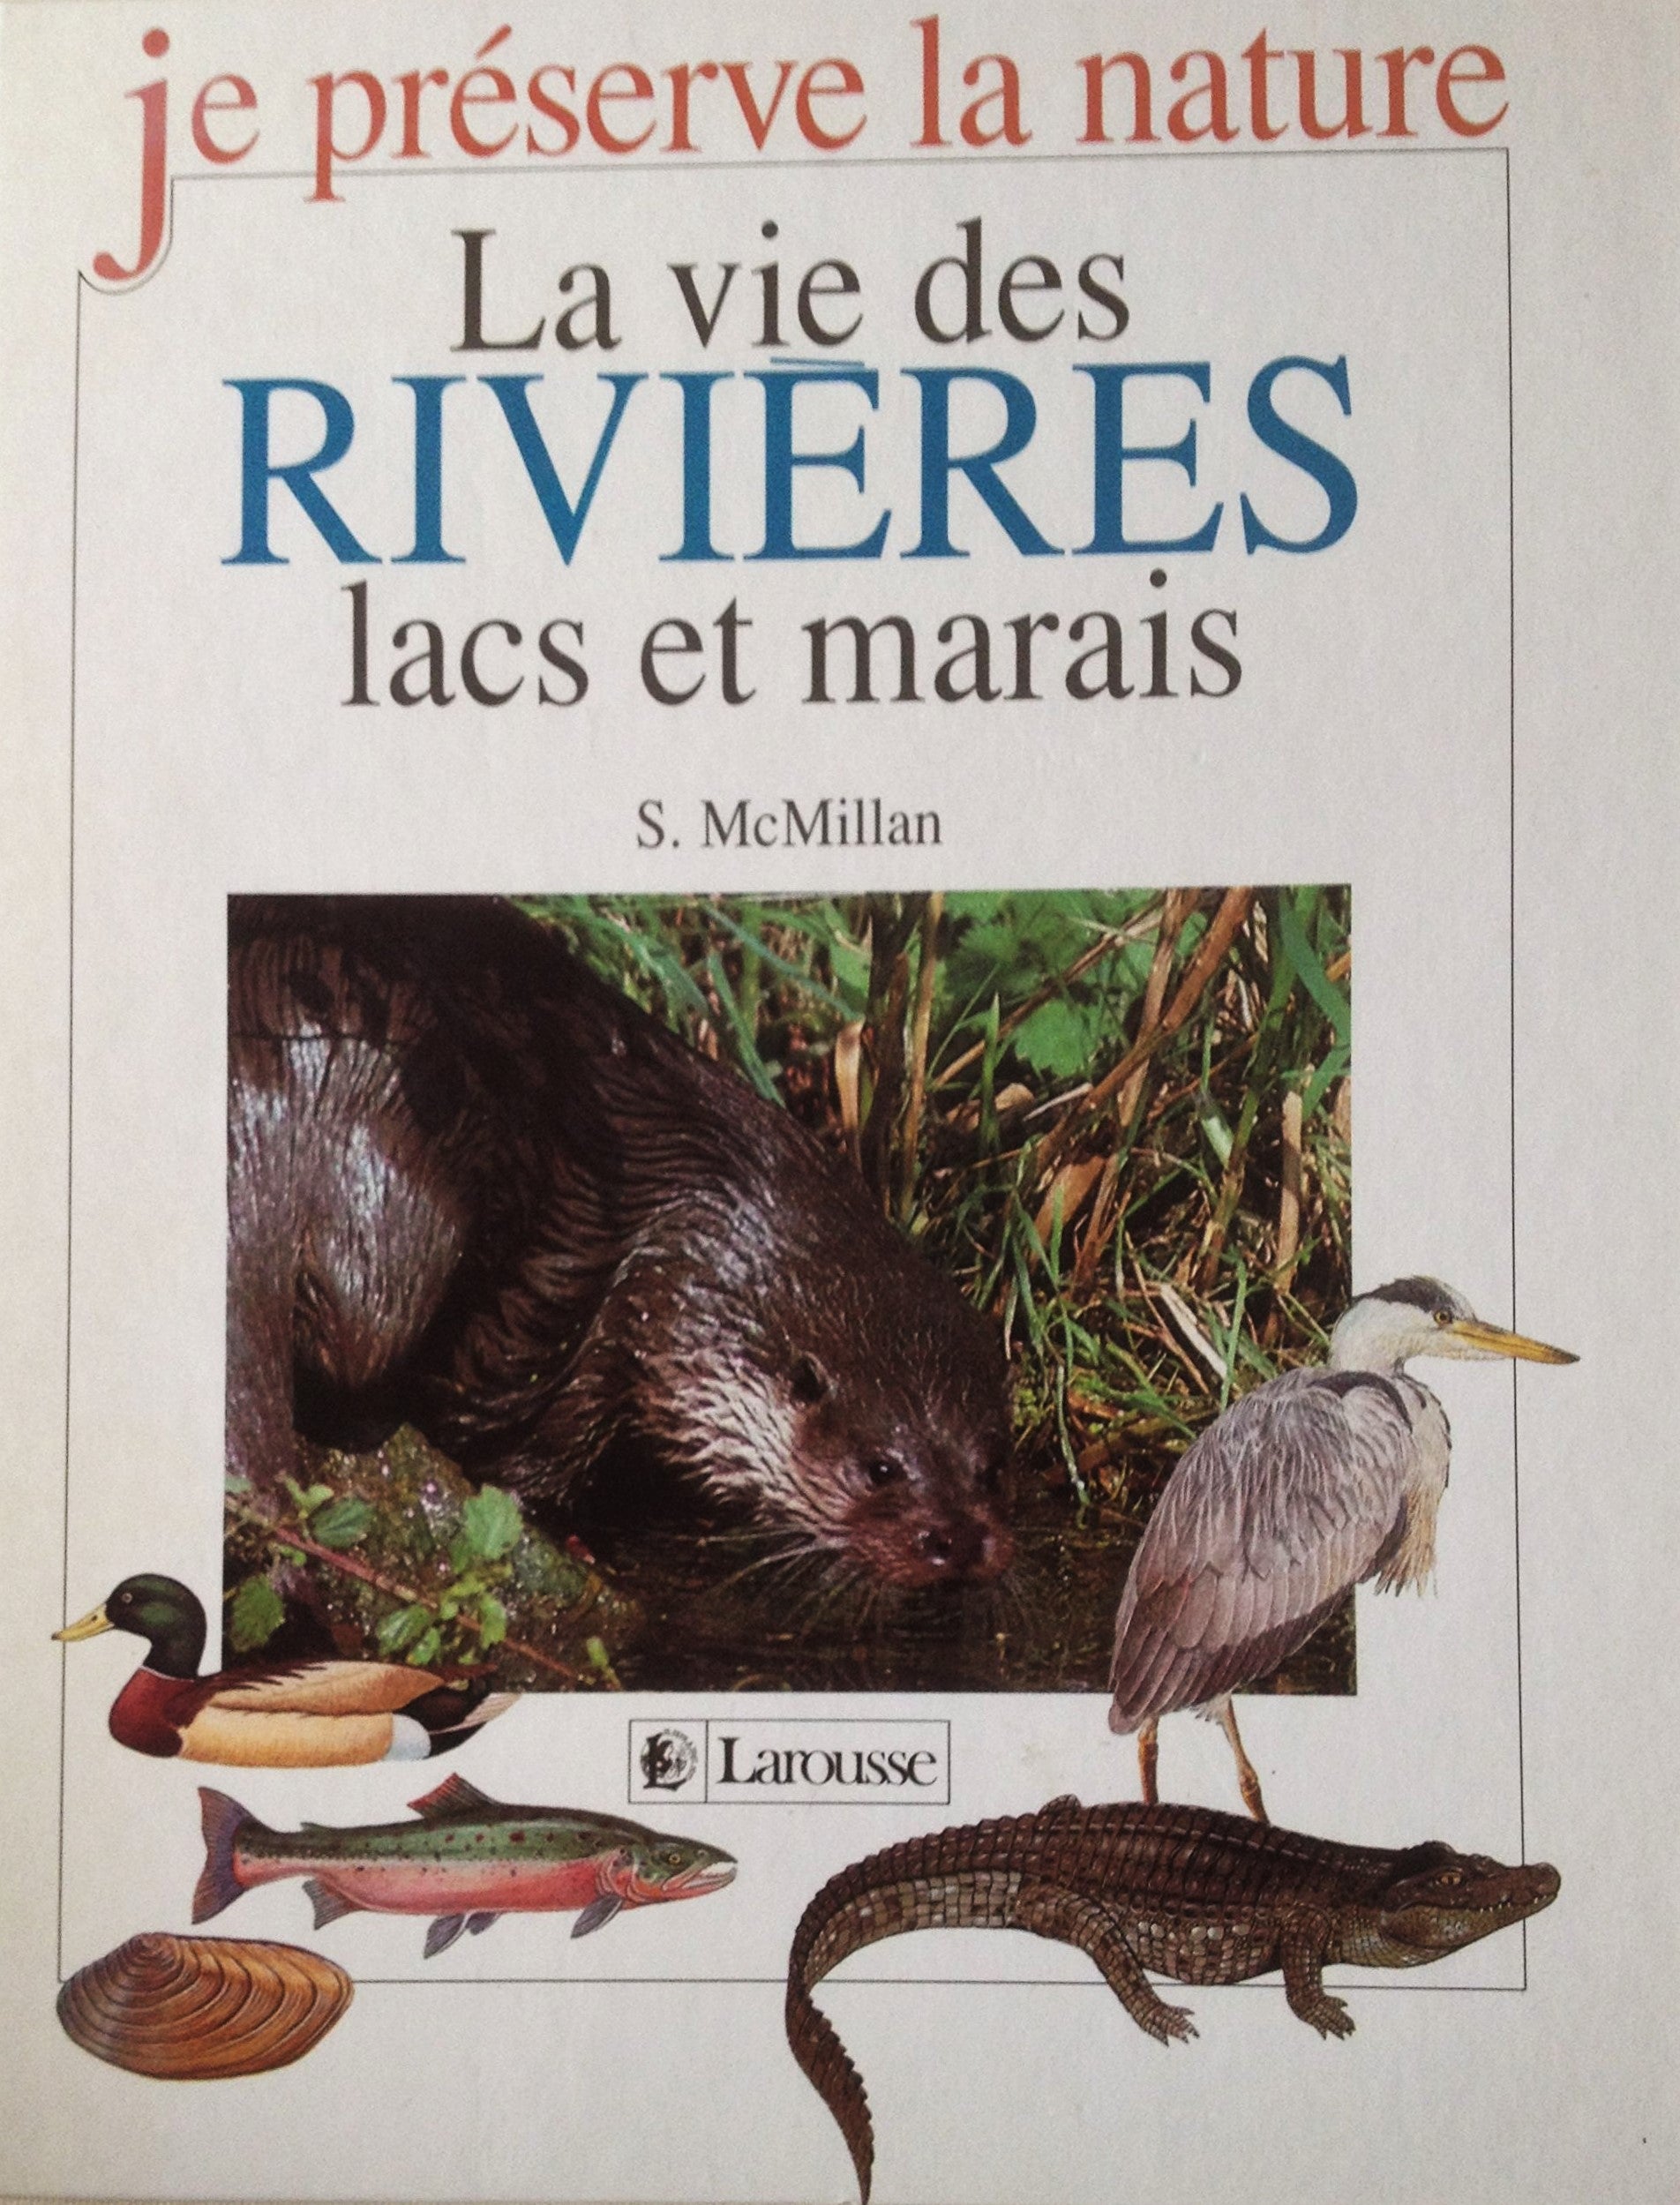 Je préserve la nature : La vie des rivières lacs et marais - S. McMillan